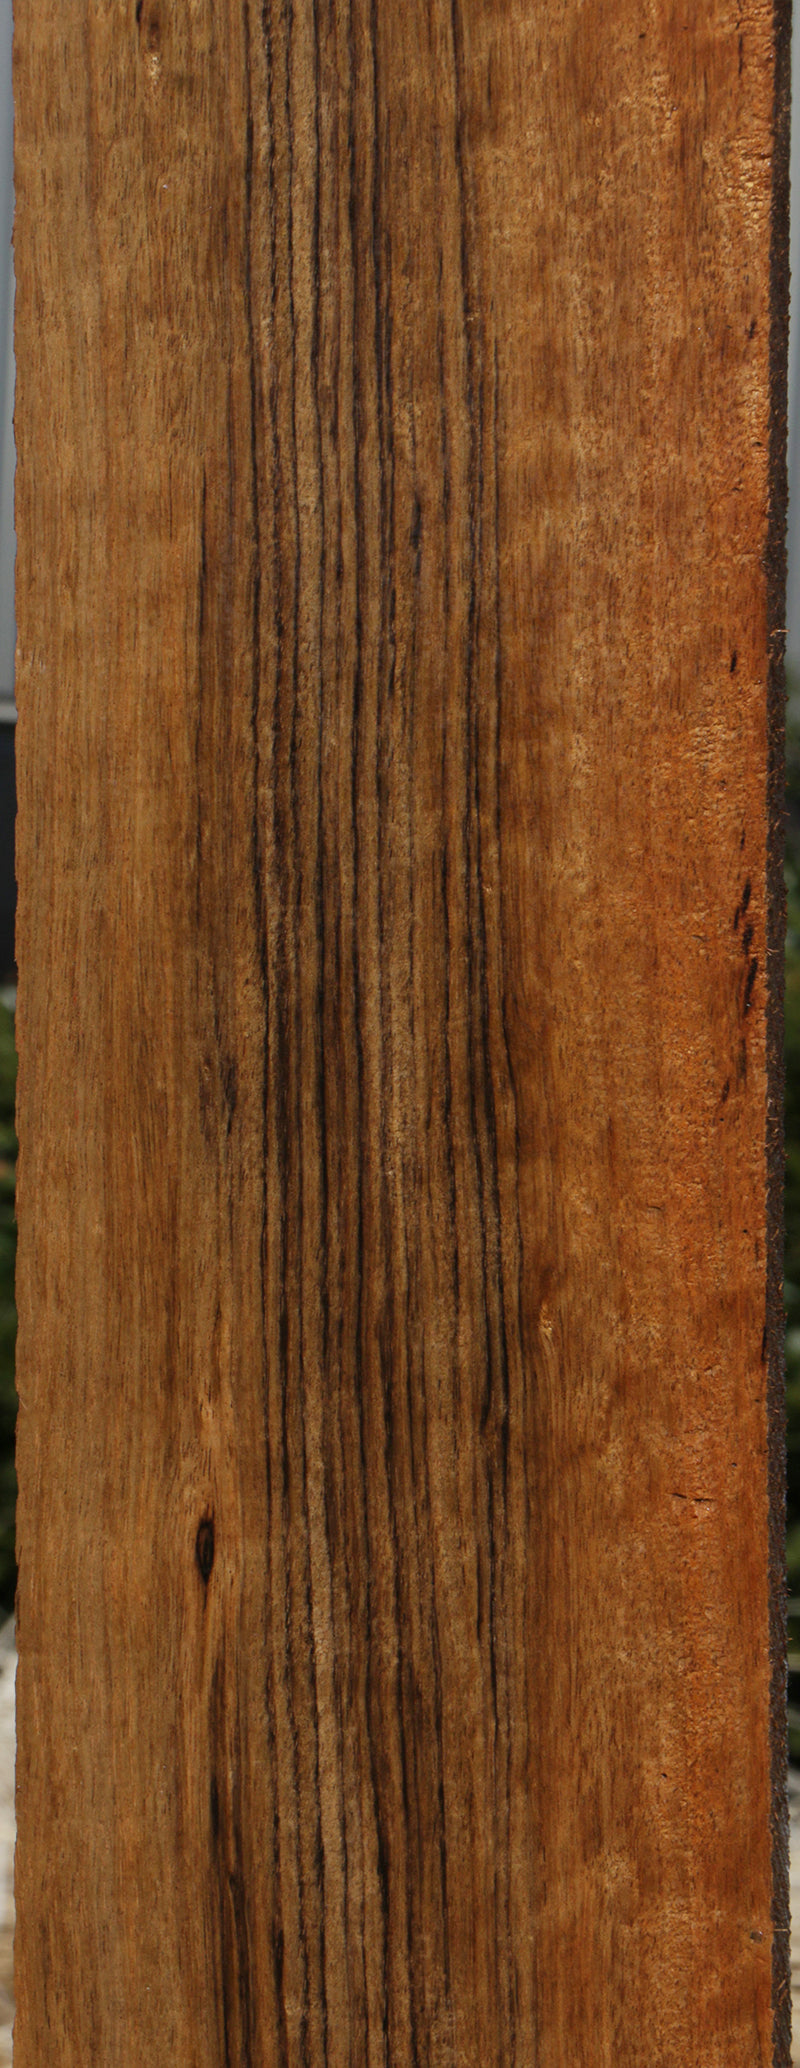 Amazique Lumber